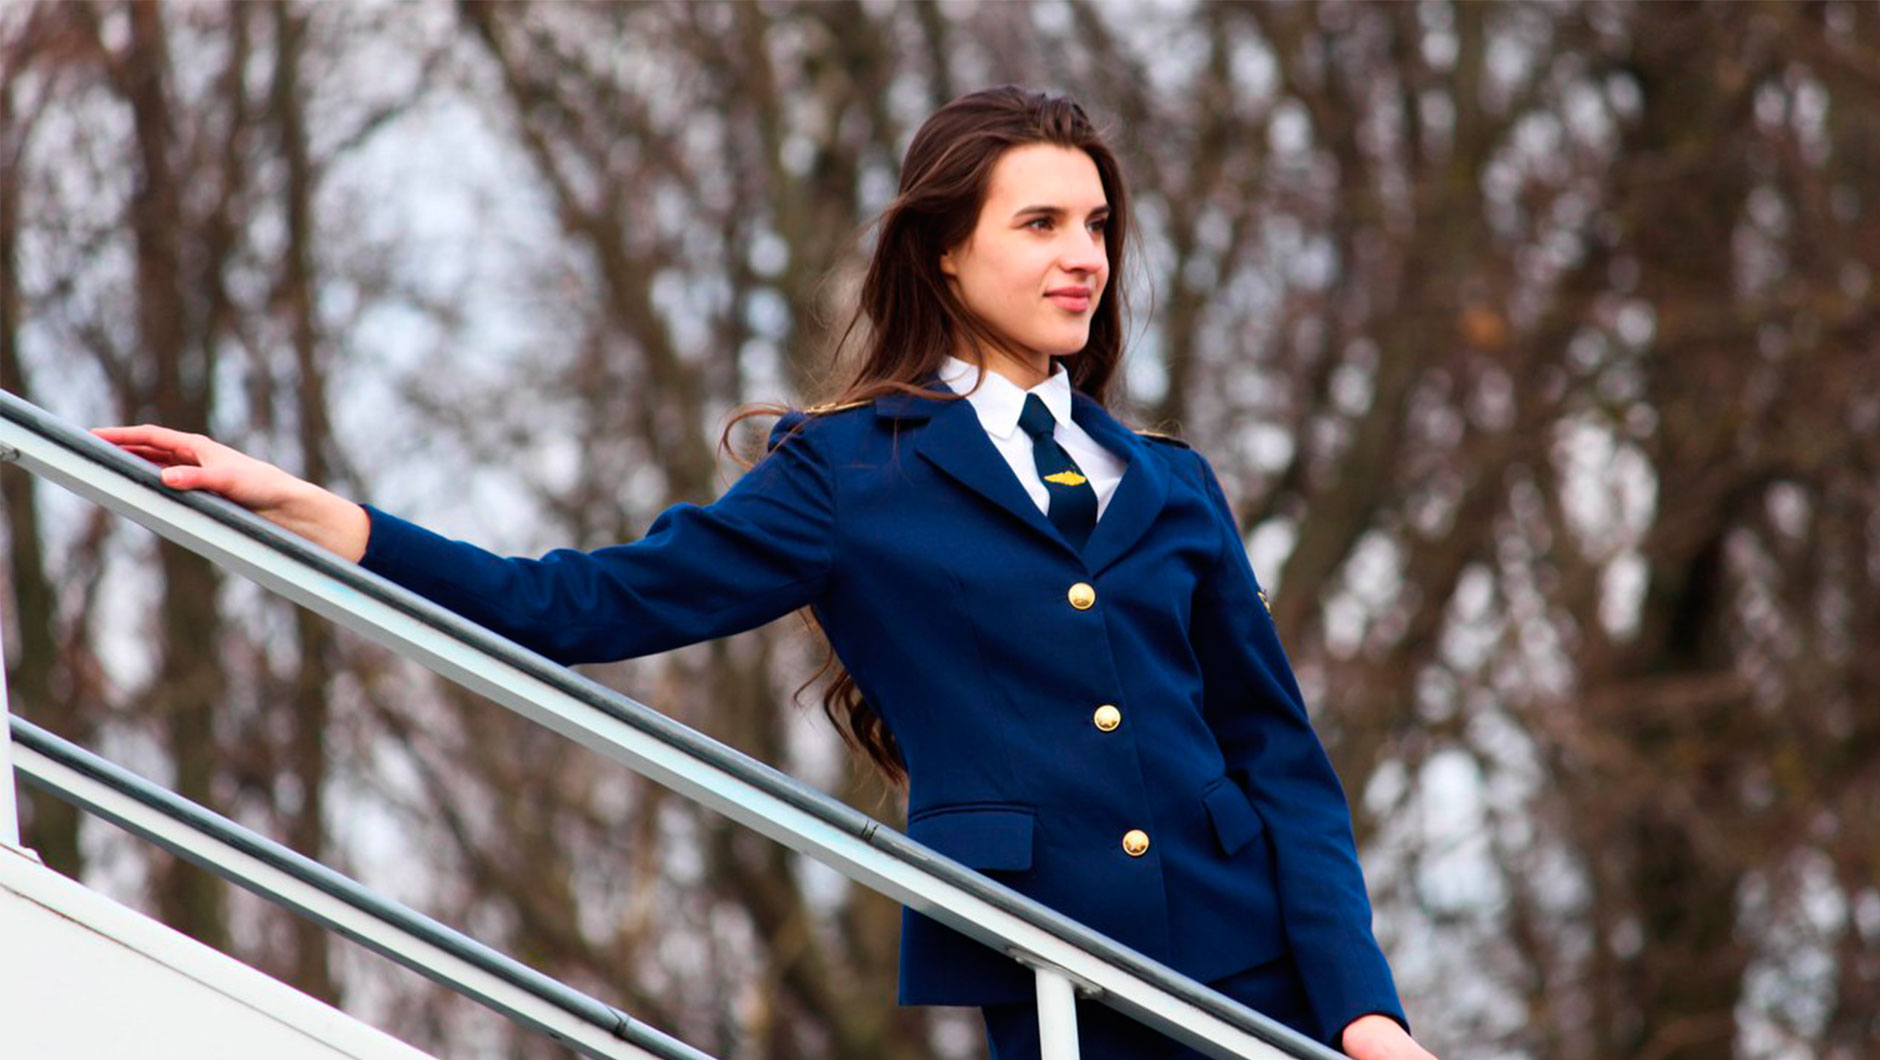 Девушки, которые хотят учиться в Белорусской государственной академии авиации, могут поступить на факультет гражданской авиации